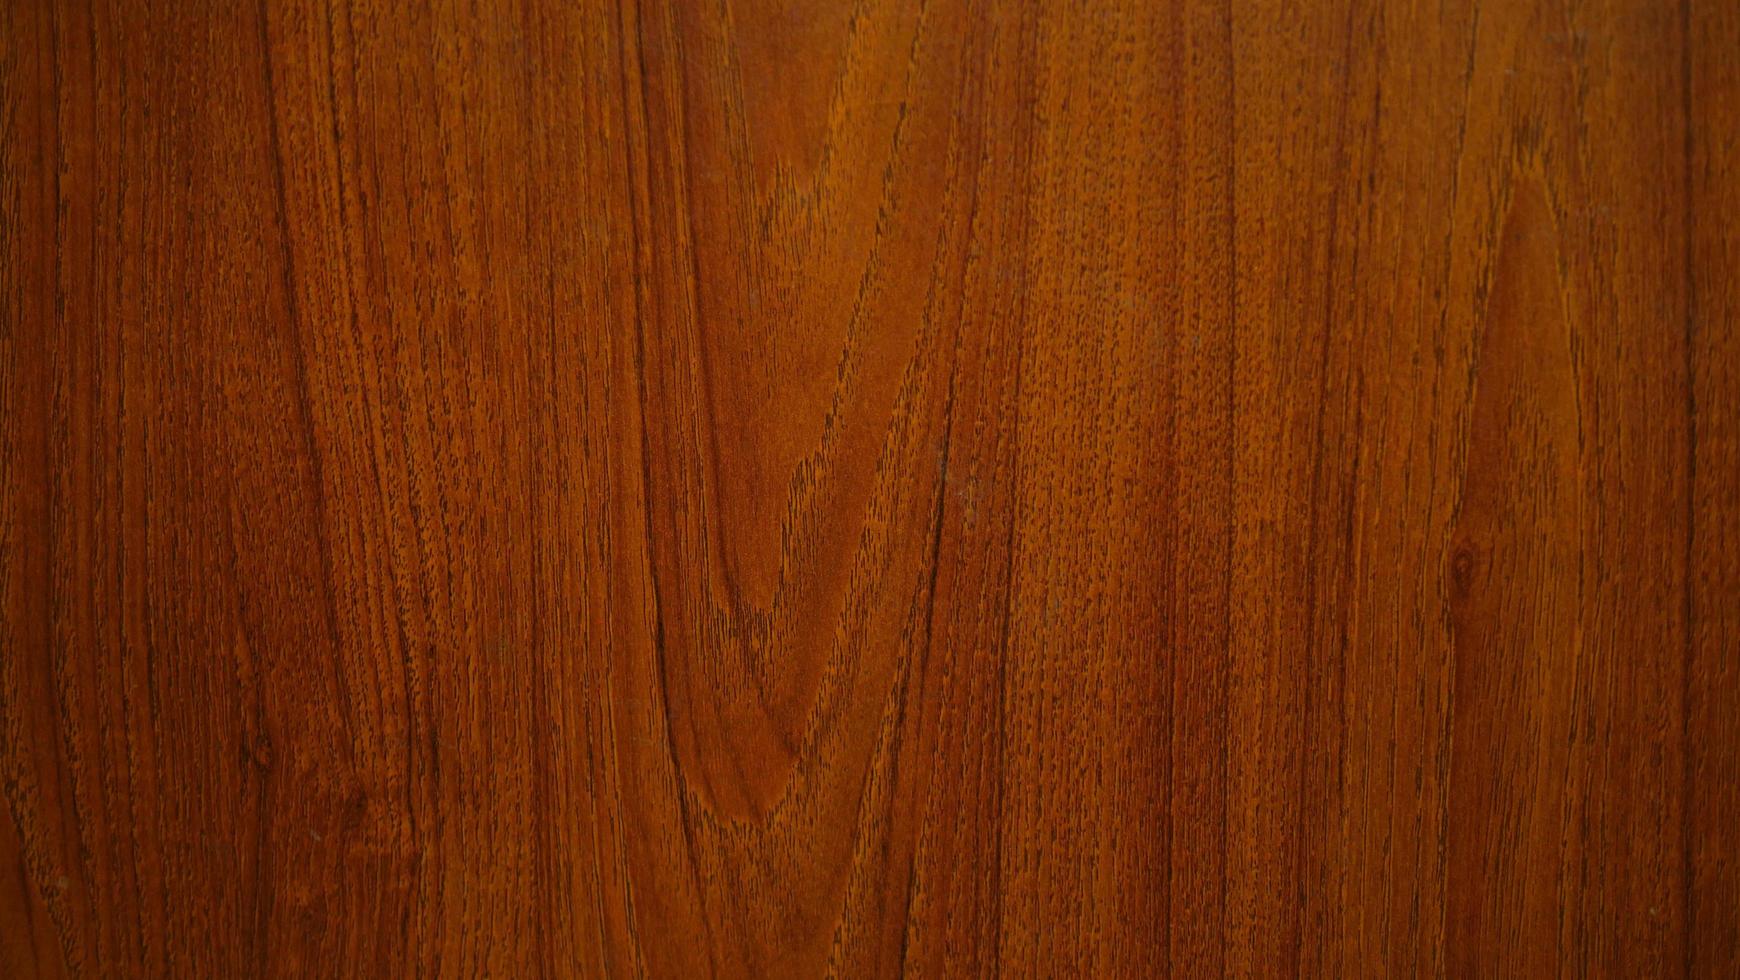 Mẫu vân gỗ: Những chi tiết vân gỗ trên bề mặt sẽ khiến bạn xao xuyến với sự tự nhiên mà nó mang lại.